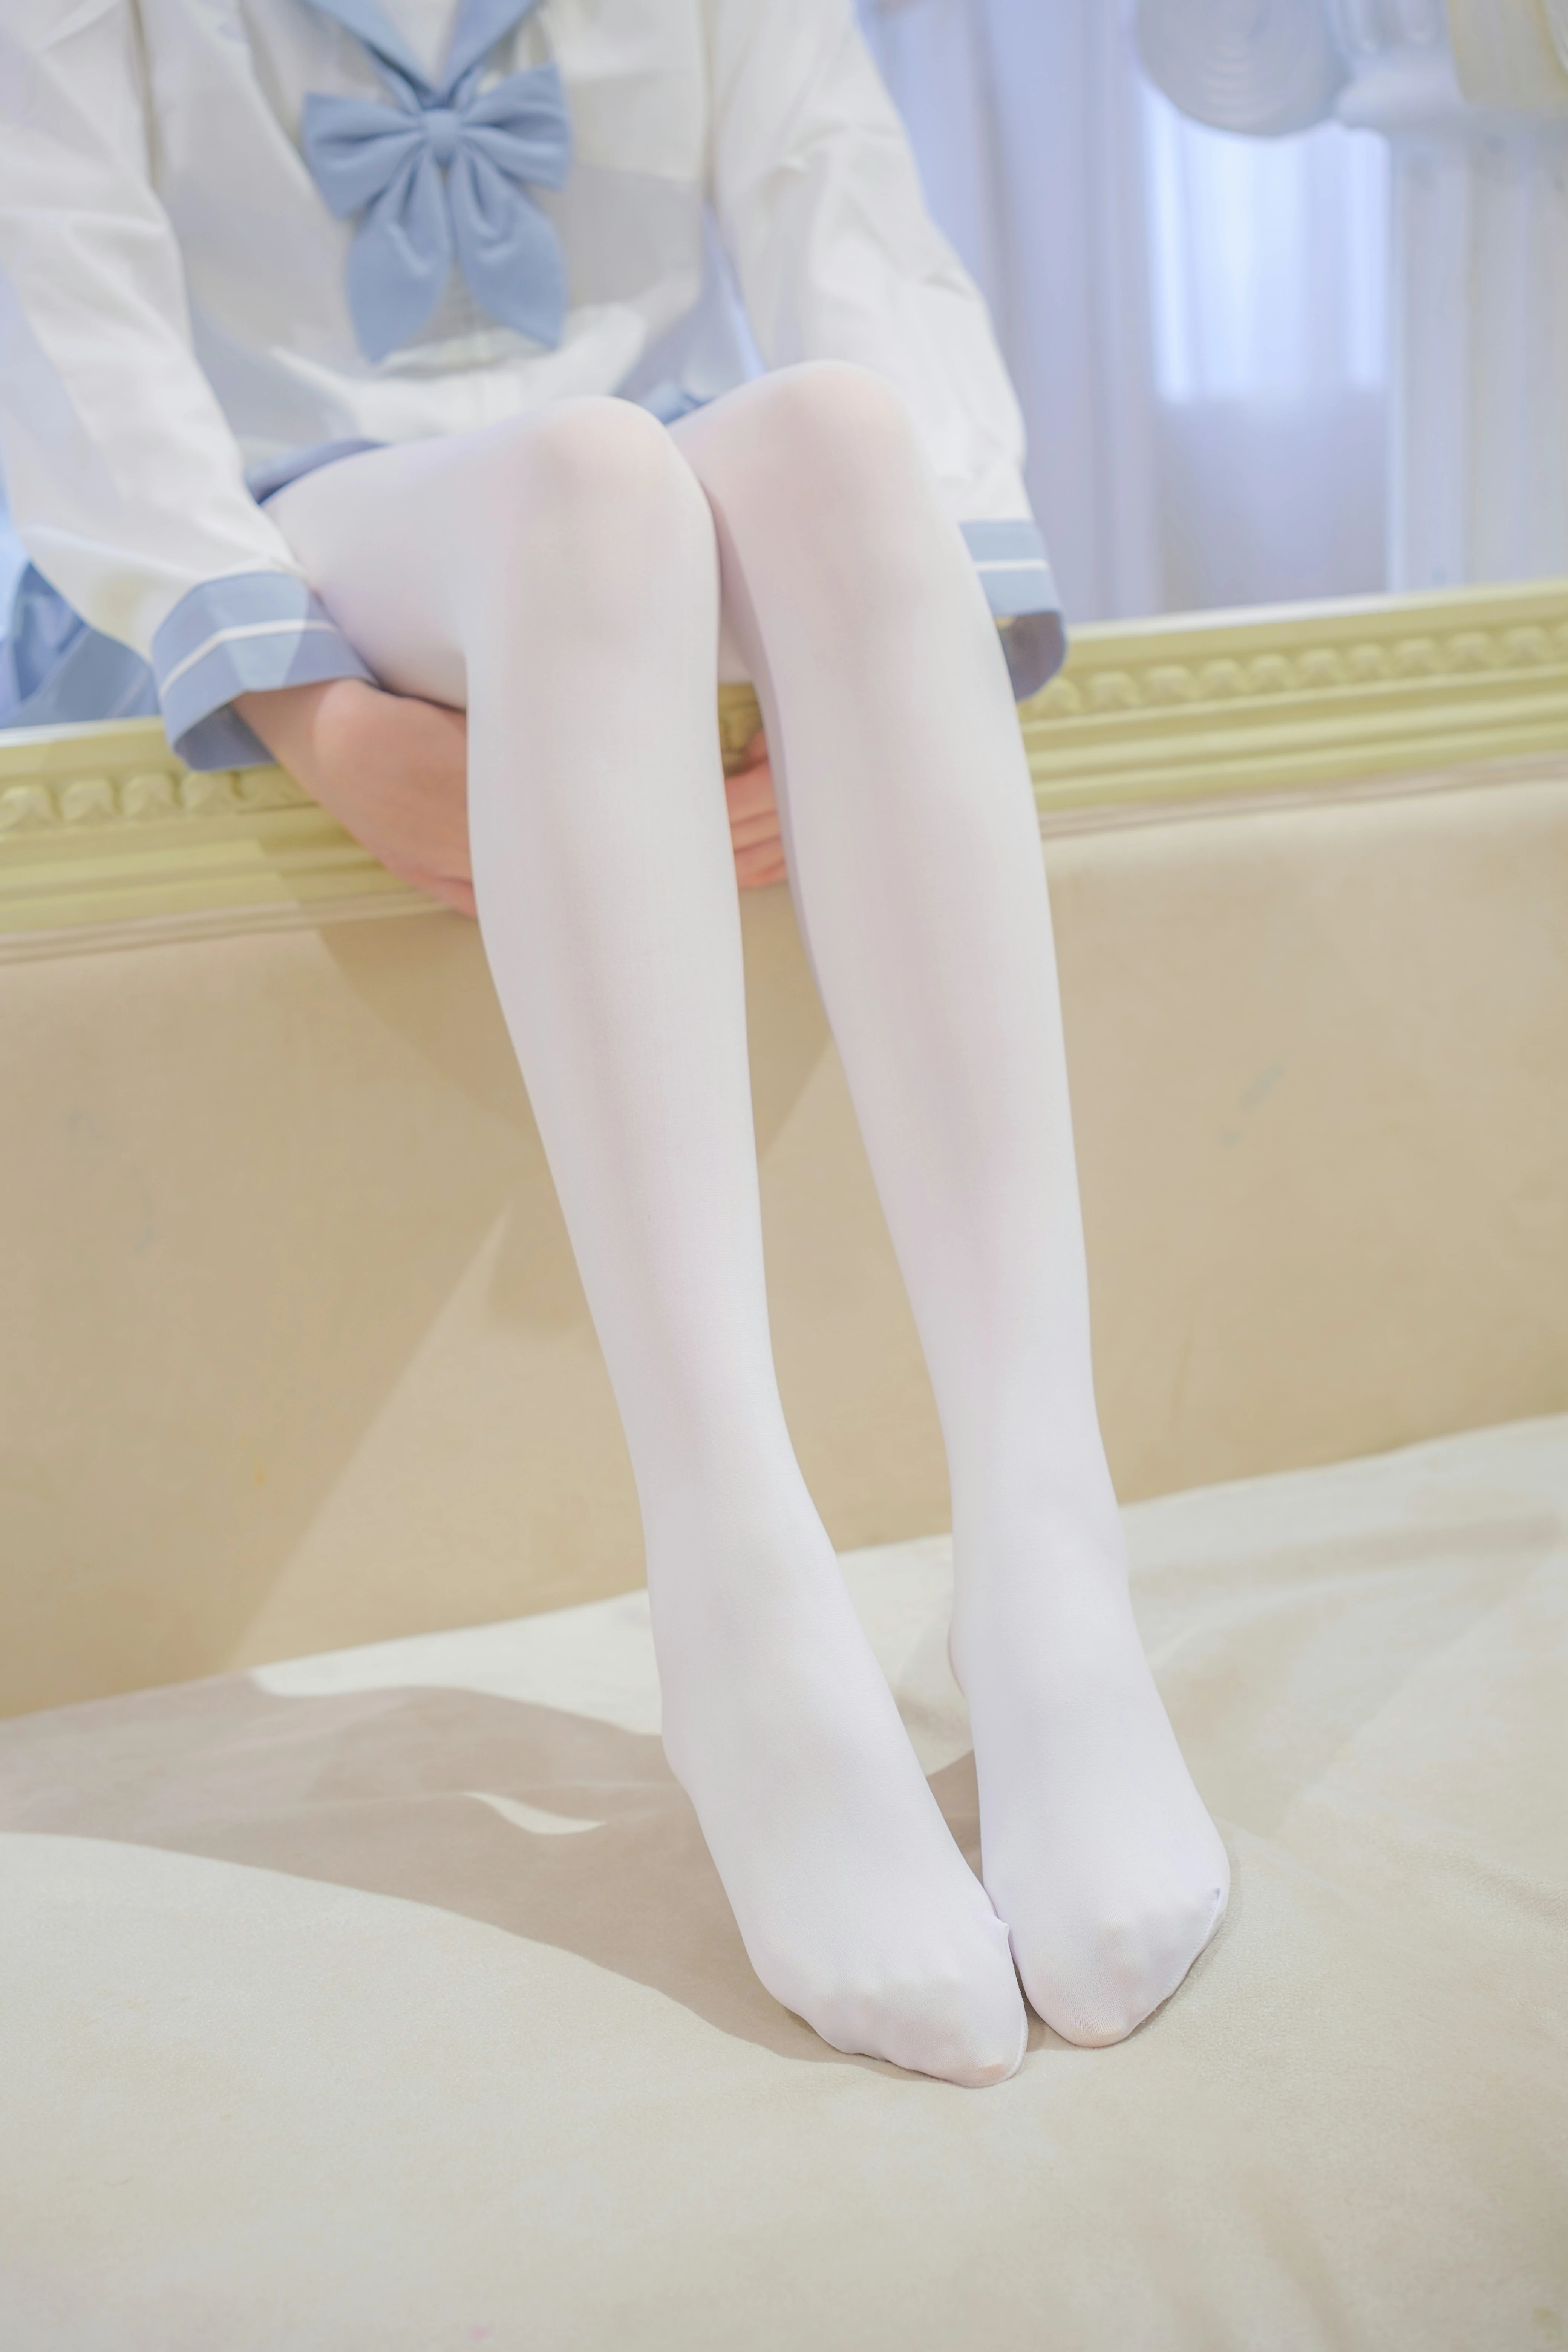 [森萝财团]GZAY4 酒店阳台上的JK制服小萝莉 白色衬衫与灰色短裙加白色丝袜美腿性感私房写真集,0007